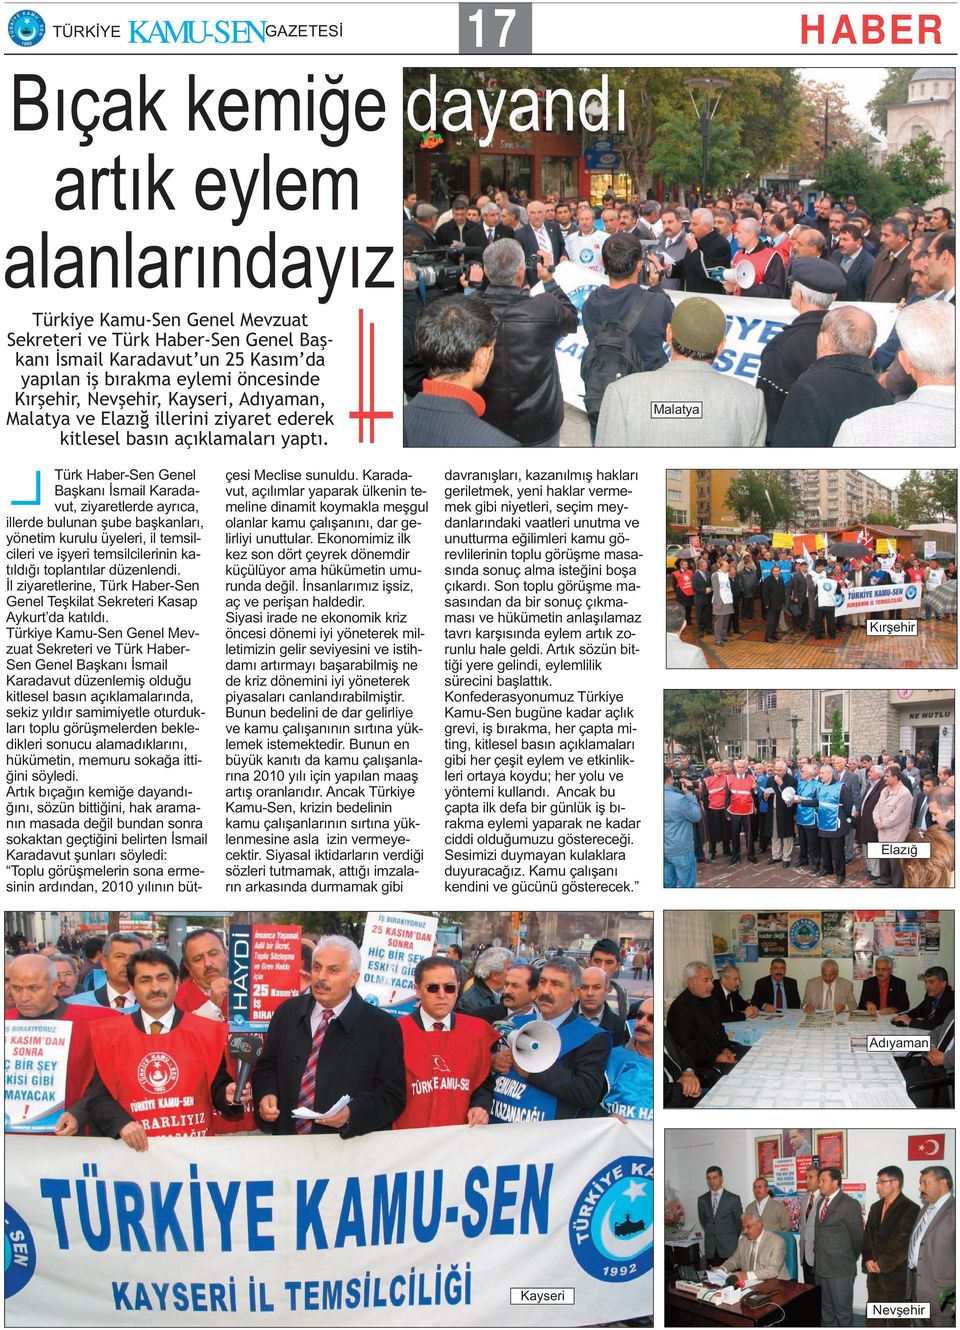 Malatya Türk Haber-Sen Genel Başkanı İsmail Karadavut, ziyaretlerde ayrıca, illerde bulunan şube başkanları, yönetim kurulu üyeleri, il temsilcileri ve işyeri temsilcilerinin katıldığı toplantılar